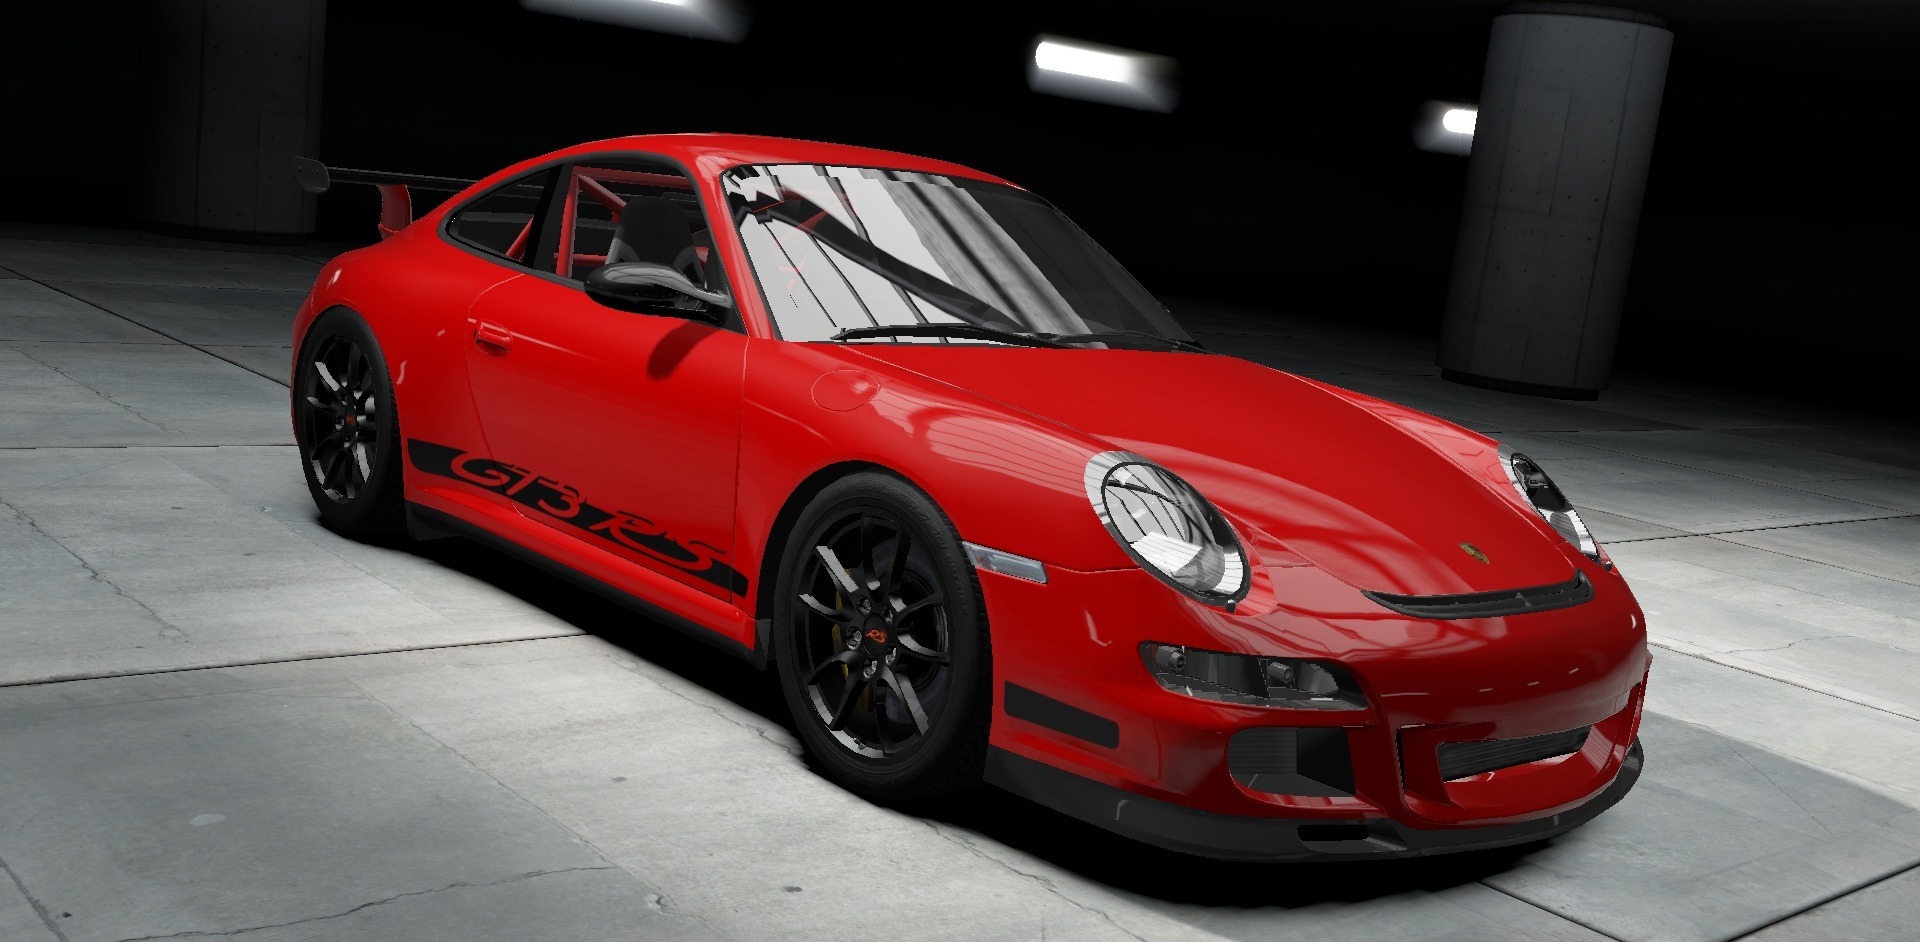 Porsche 911 Gt3 Rs 997 Need For Speed Wiki Fandom